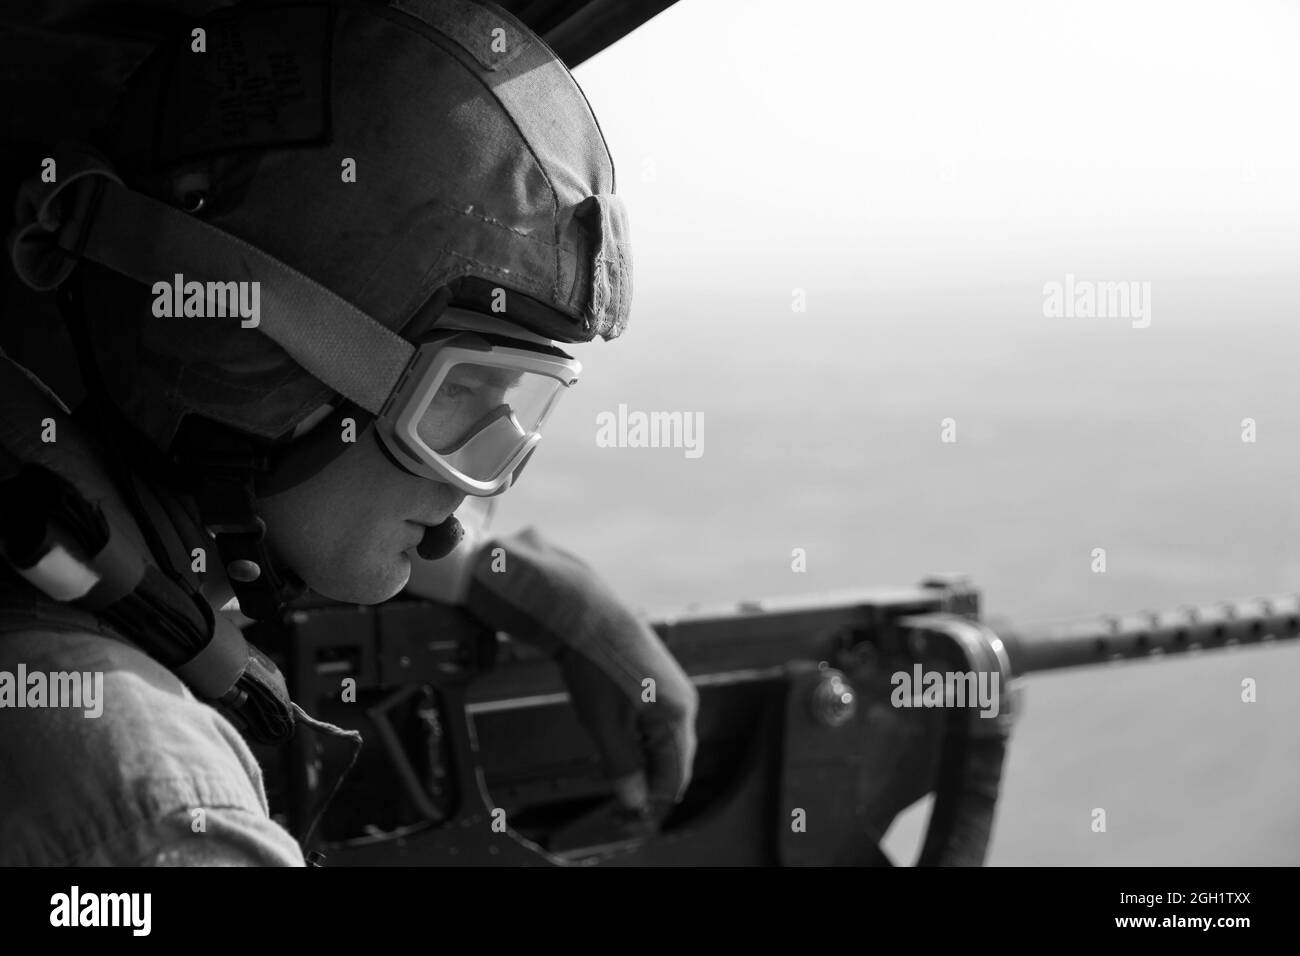 Sergent d'état-major des Marines des États-Unis Le 469 juin 2012, Robert Wise du Marine Light Attack Helicopter Squadron (HMLA) 20 balaye le terrain en y faisant une mitrailleuse de calibre 0,50 sur un hélicoptère UH-1Y Venom Huey, tout en offrant une reconnaissance aérienne aux Marines du 3e Bataillon de reconnaissance des armes légères (3e LAR) dans la province de Helmand, en Afghanistan. Le HMLA-469 a assuré la reconnaissance aérienne et la sécurité des Marines de la 3e LAR pendant l'opération Halberd V afin d'empêcher la distribution de la contrebande à l'appui des opérations de lutte contre l'insurrection. Banque D'Images